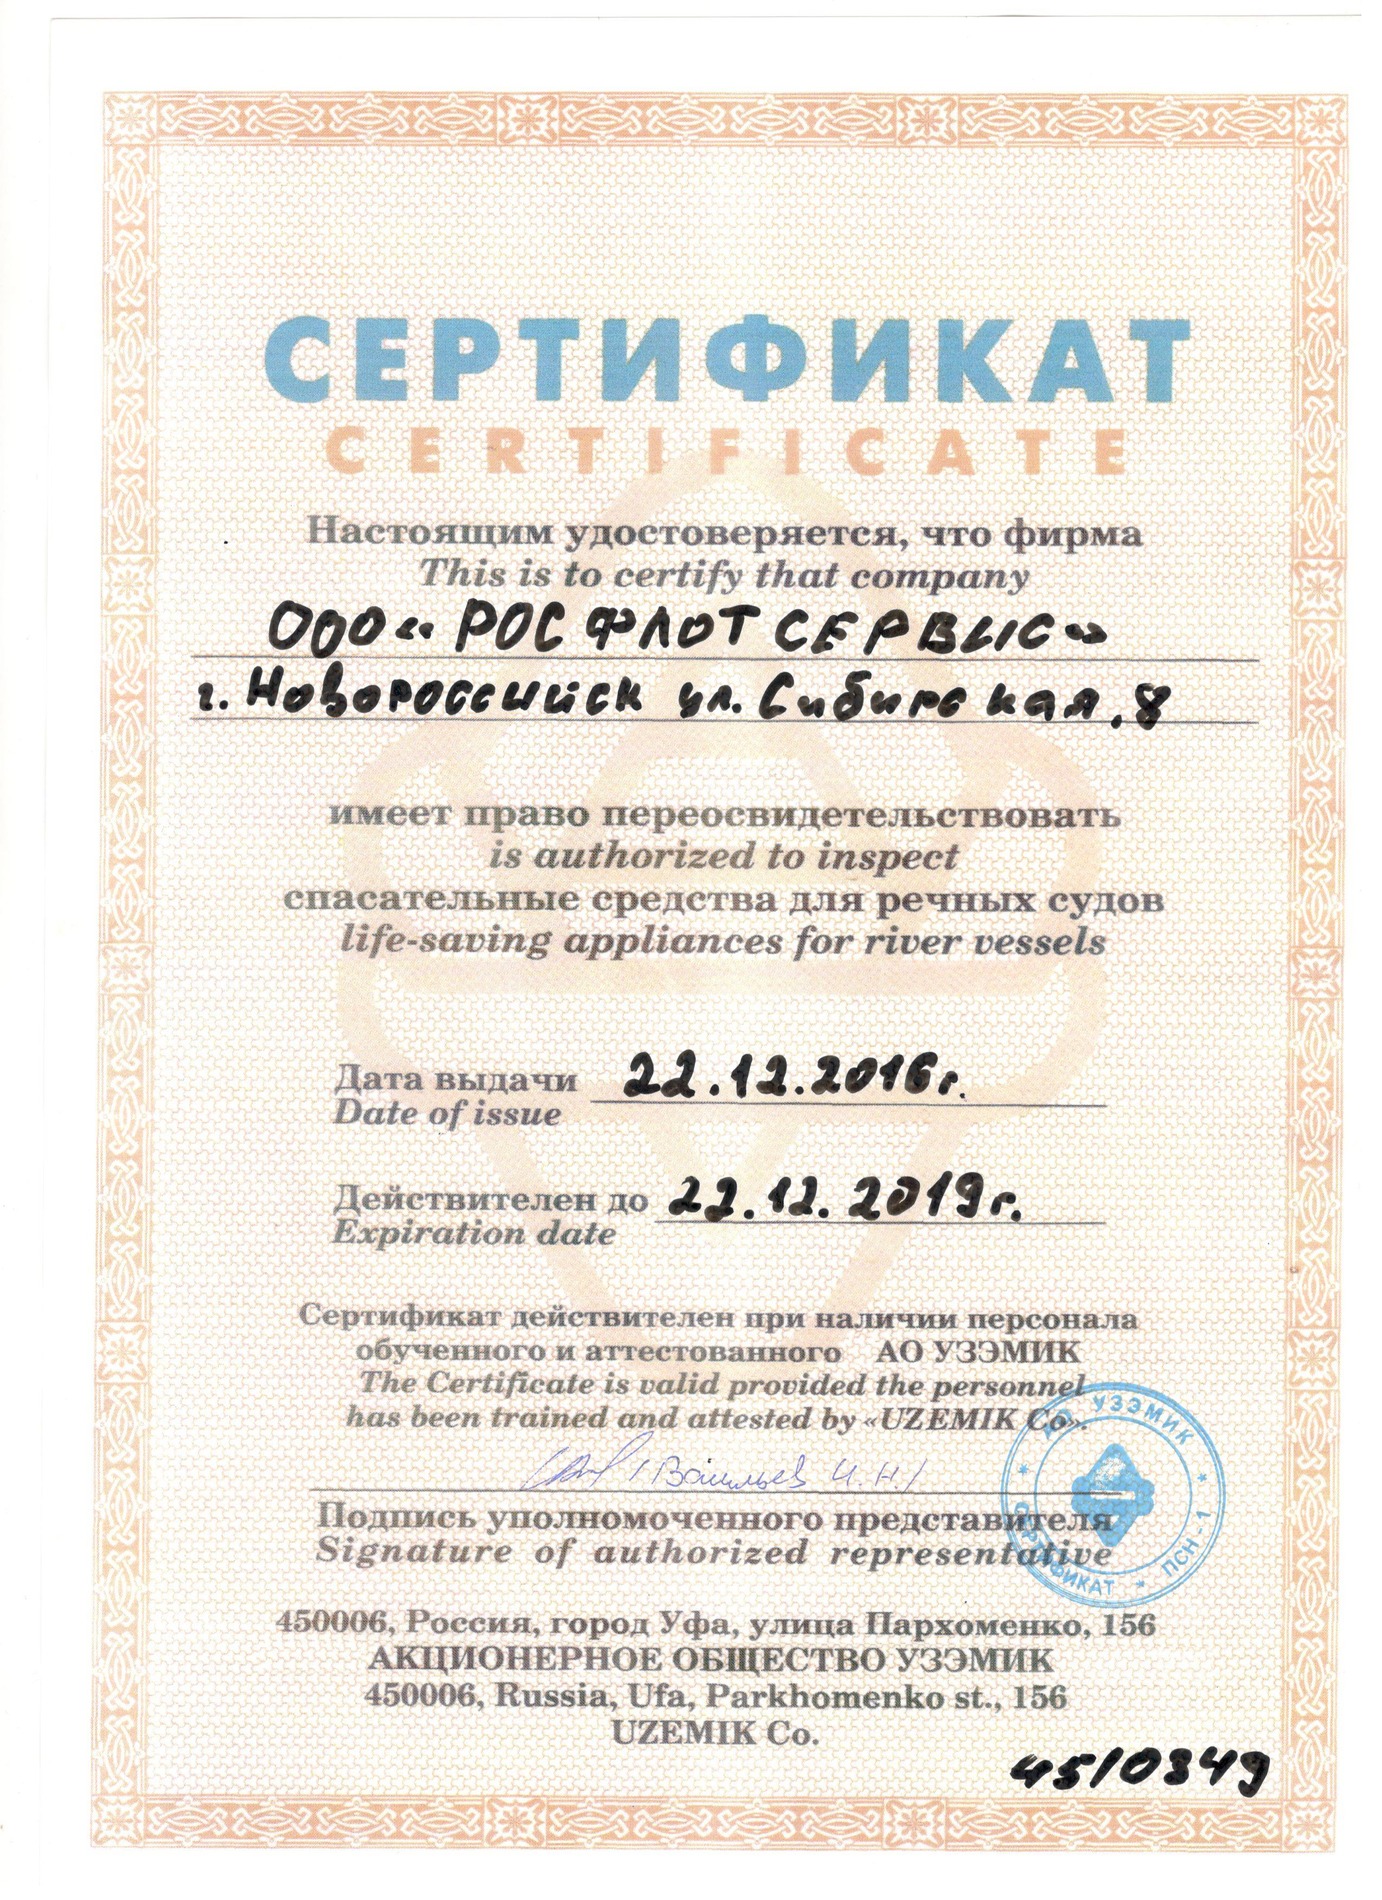 Получен сертификат на право проверки спасательных плотов производства 